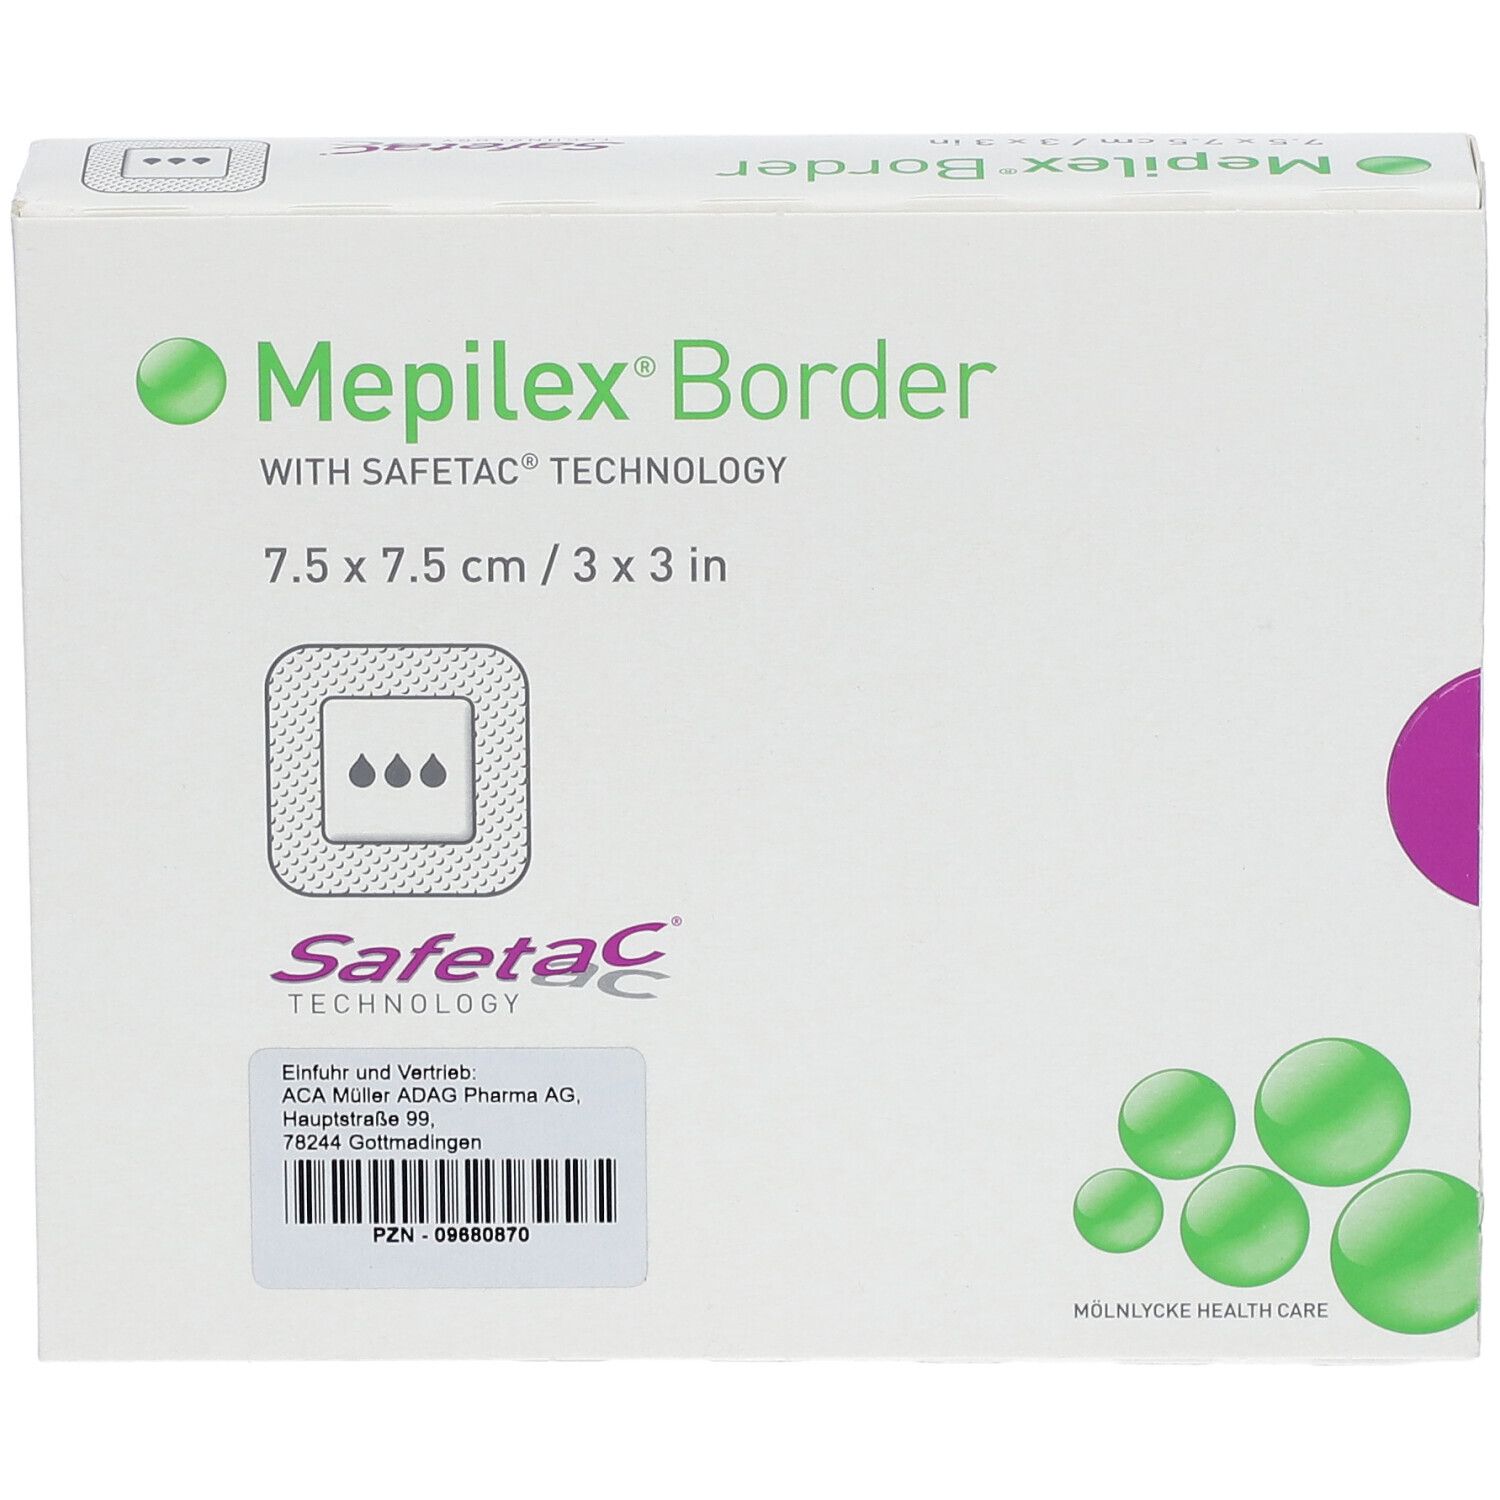 Mepilex® Border 7.5 cm x 7.5 cm